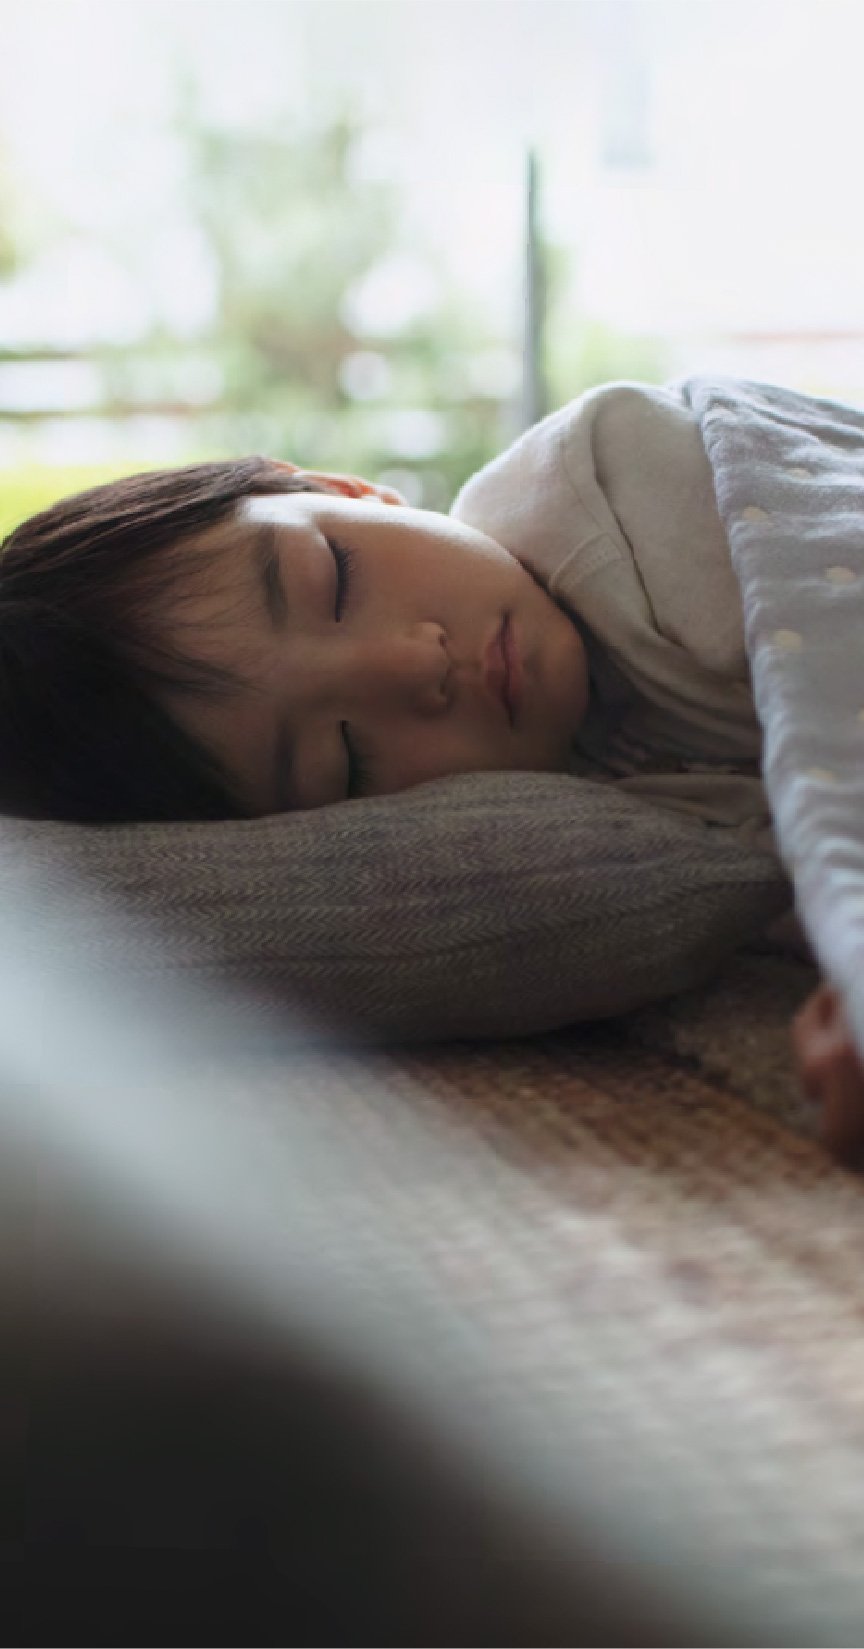 男の子が眠っている、有害物質抑制のイメージ画像です。